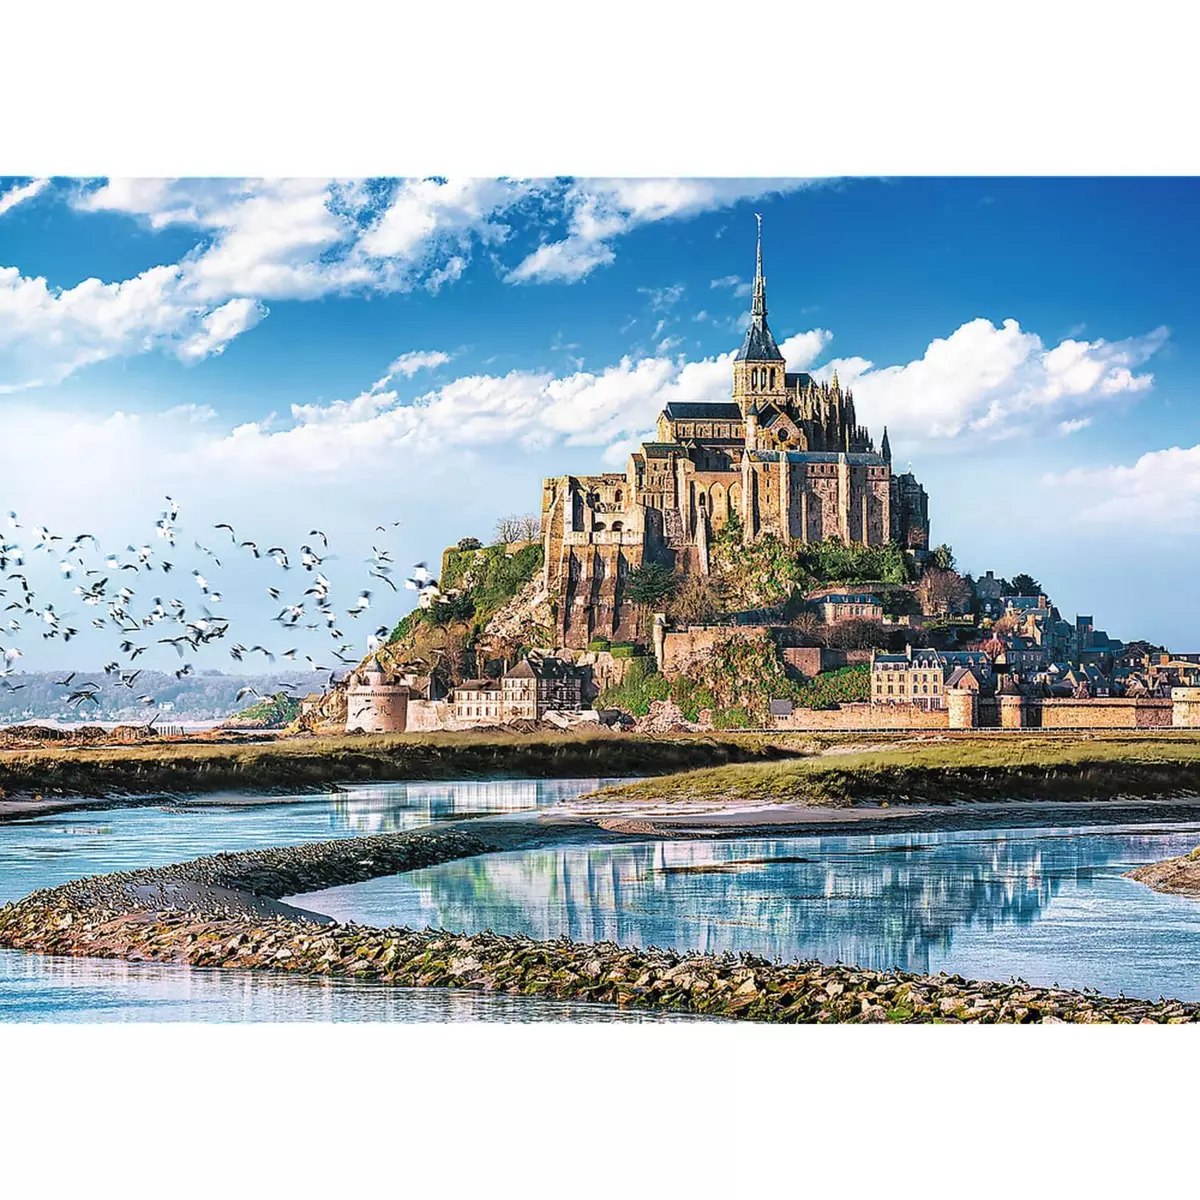 Trefl Puzzle 1000 pièces : Mont Saint-Michel, France